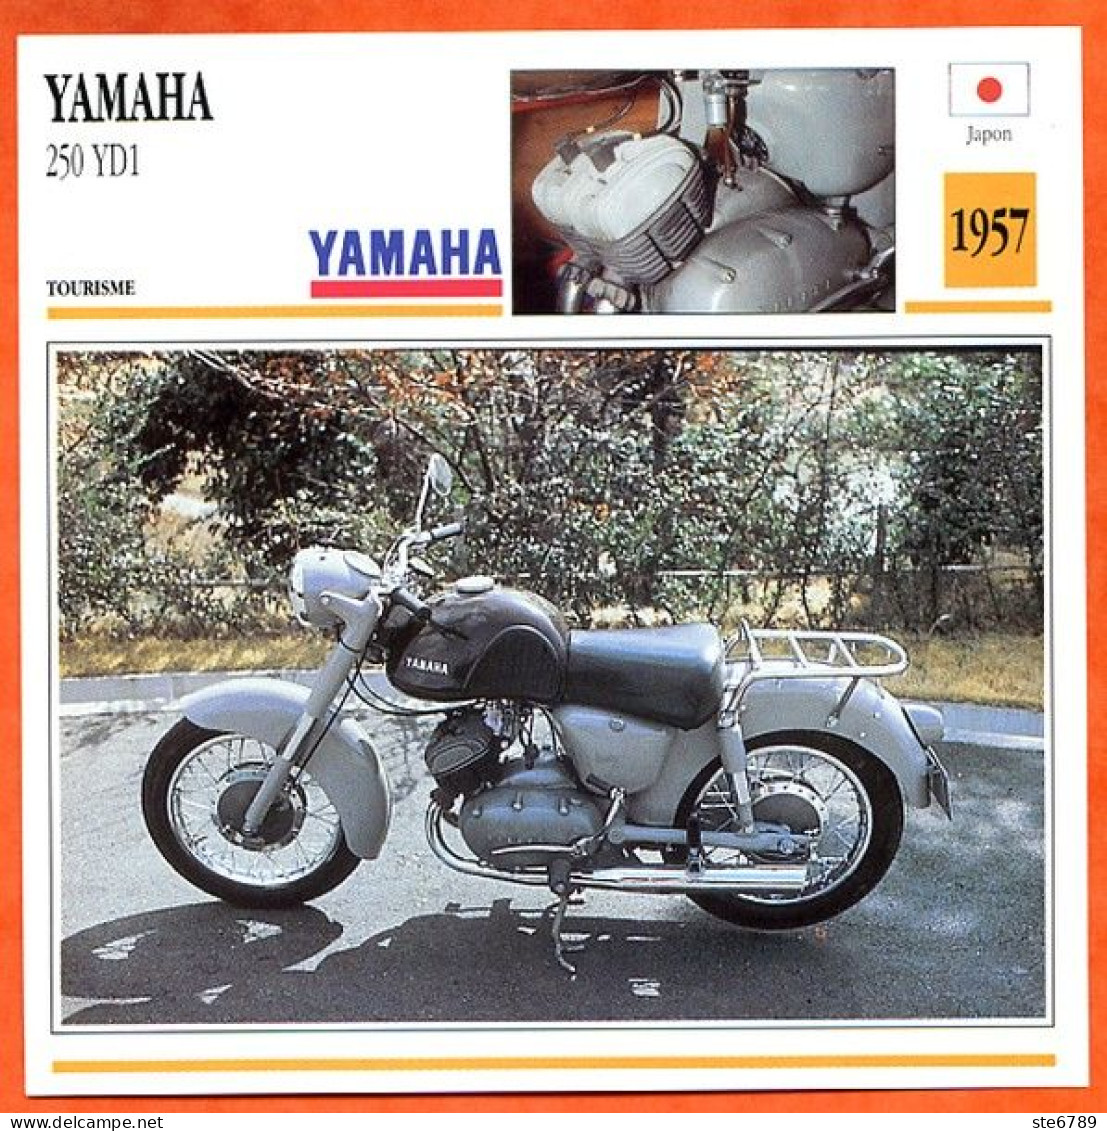 YAMAHA 250 YD1 1957  Japon Fiche Technique Moto - Sports